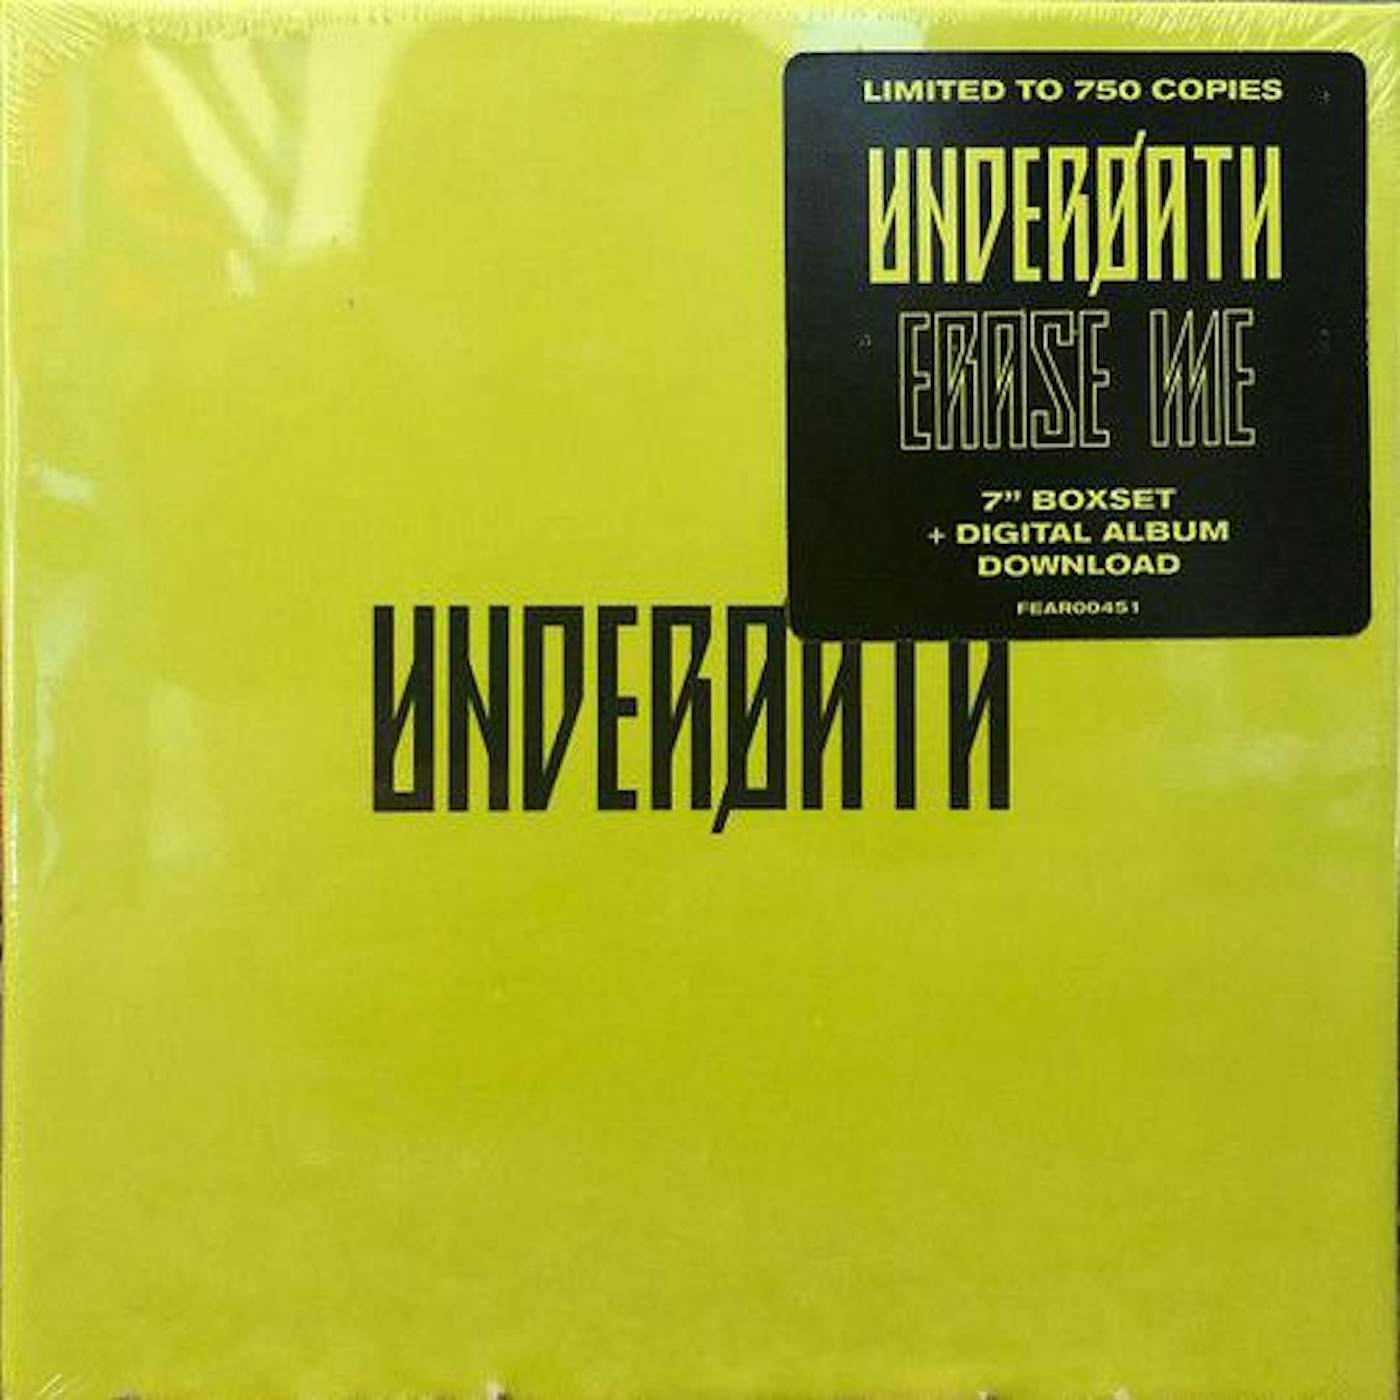 Underoath Erase Me Vinyl Record